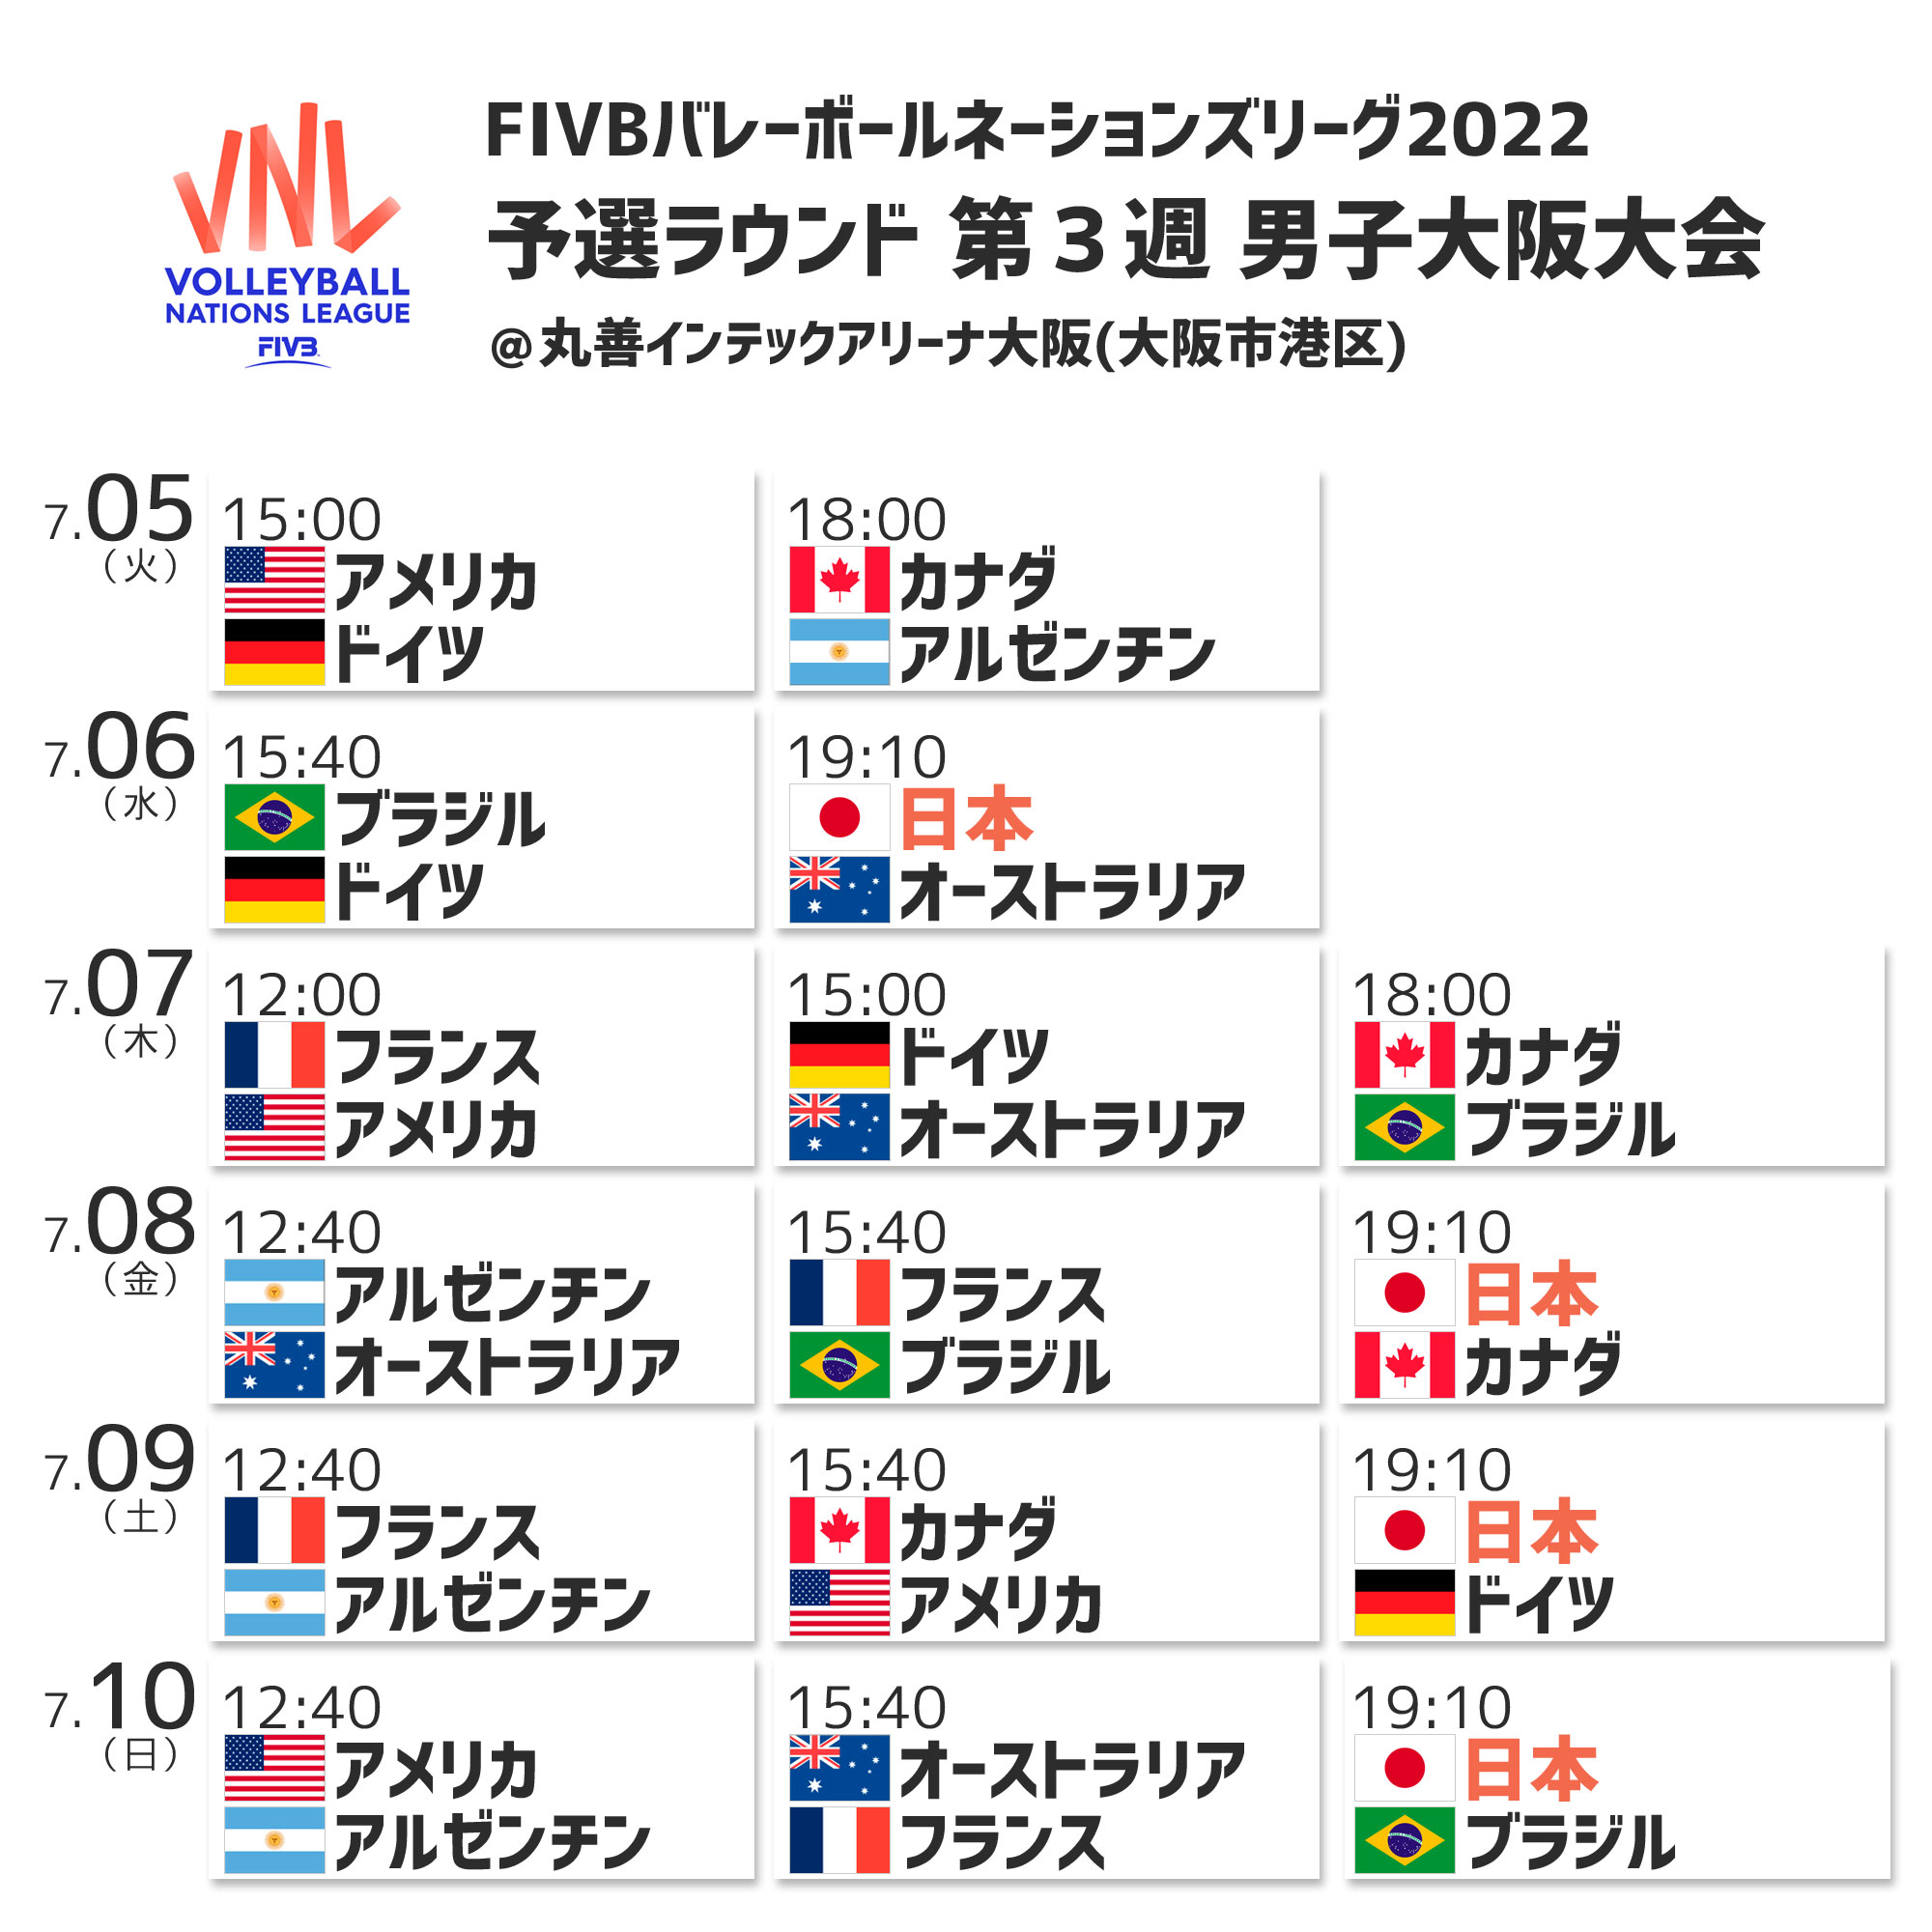 Fivbバレーボールネーションズリーグ22 予選ラウンド競技日程決定 トピックス 公益財団法人日本バレーボール協会